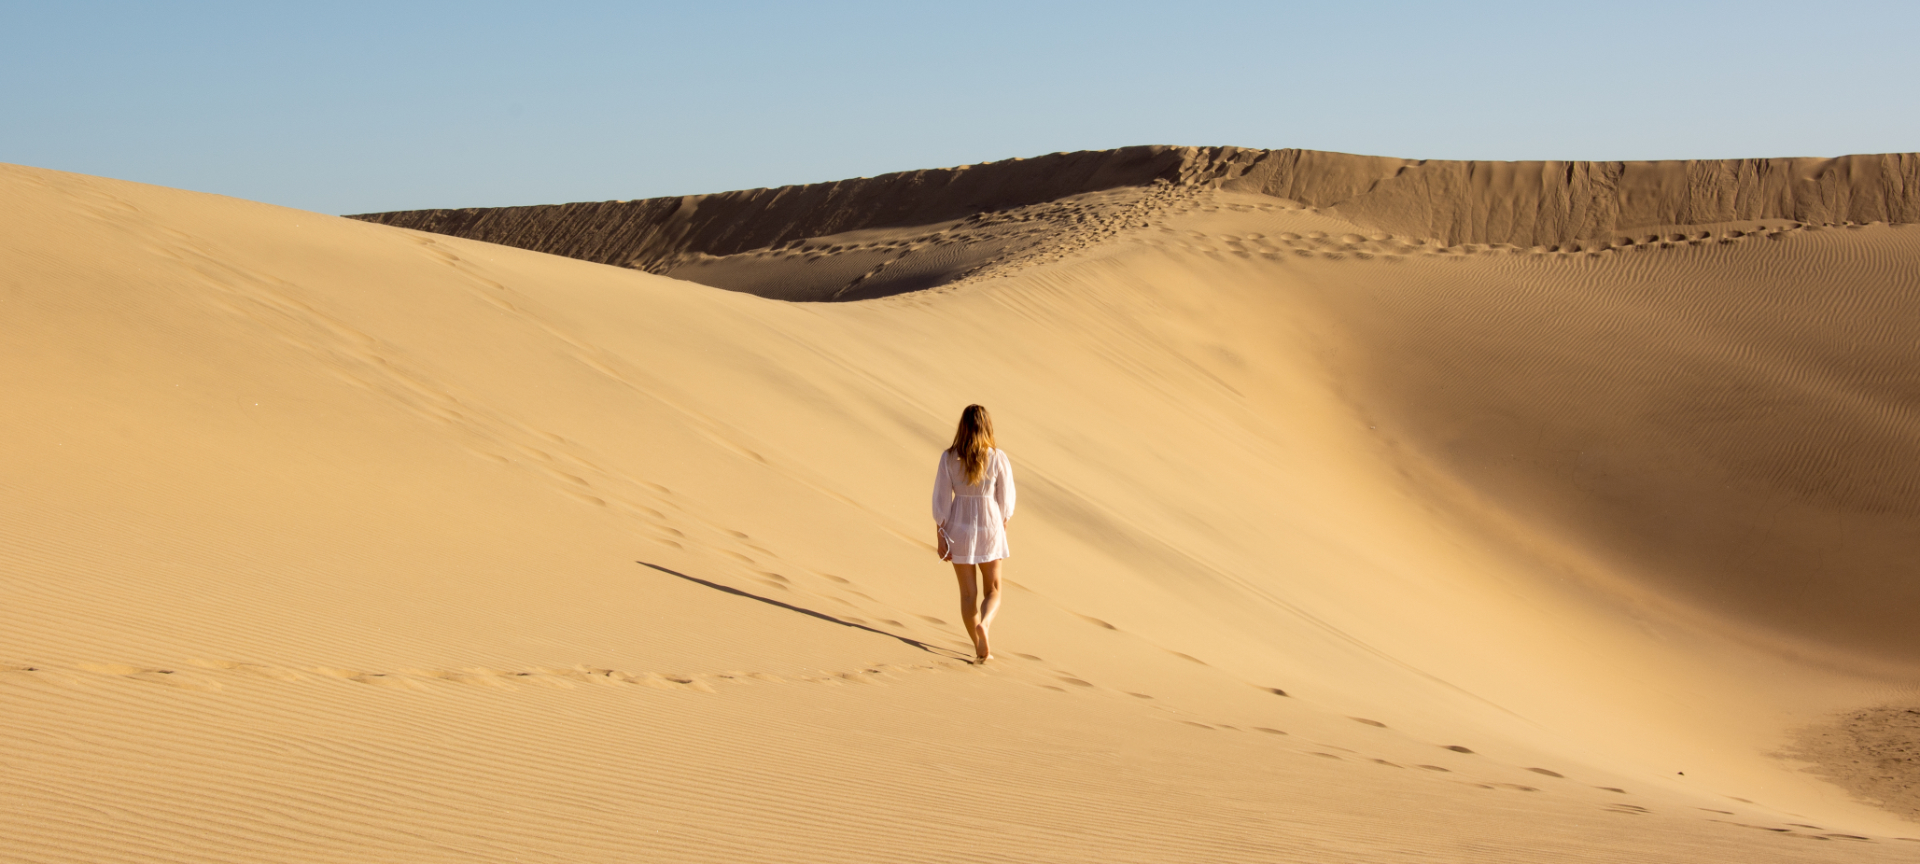 Persoon wandelt in uitgestrekte zandduinen.